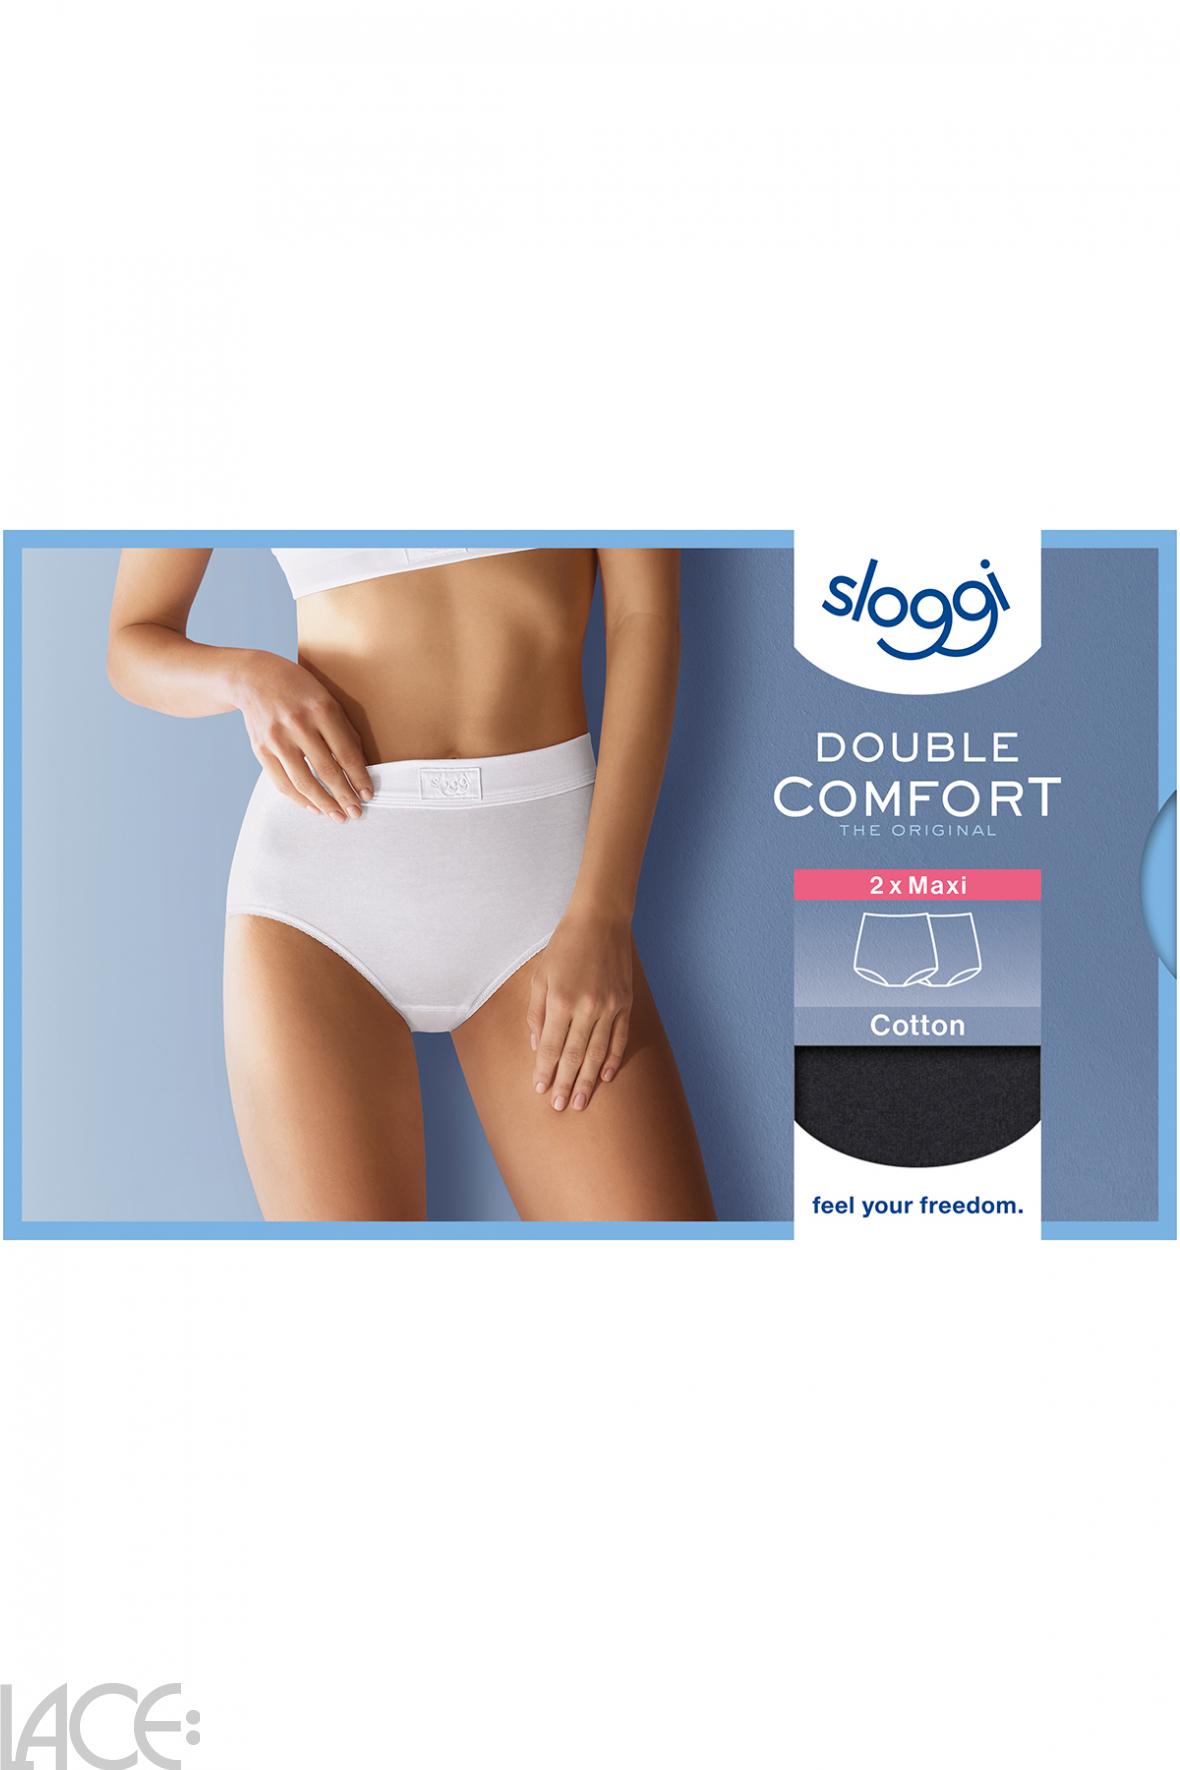 Sloggi Sloggi Double Comfort Full brief - Cotton - 2 Pack BLACK –